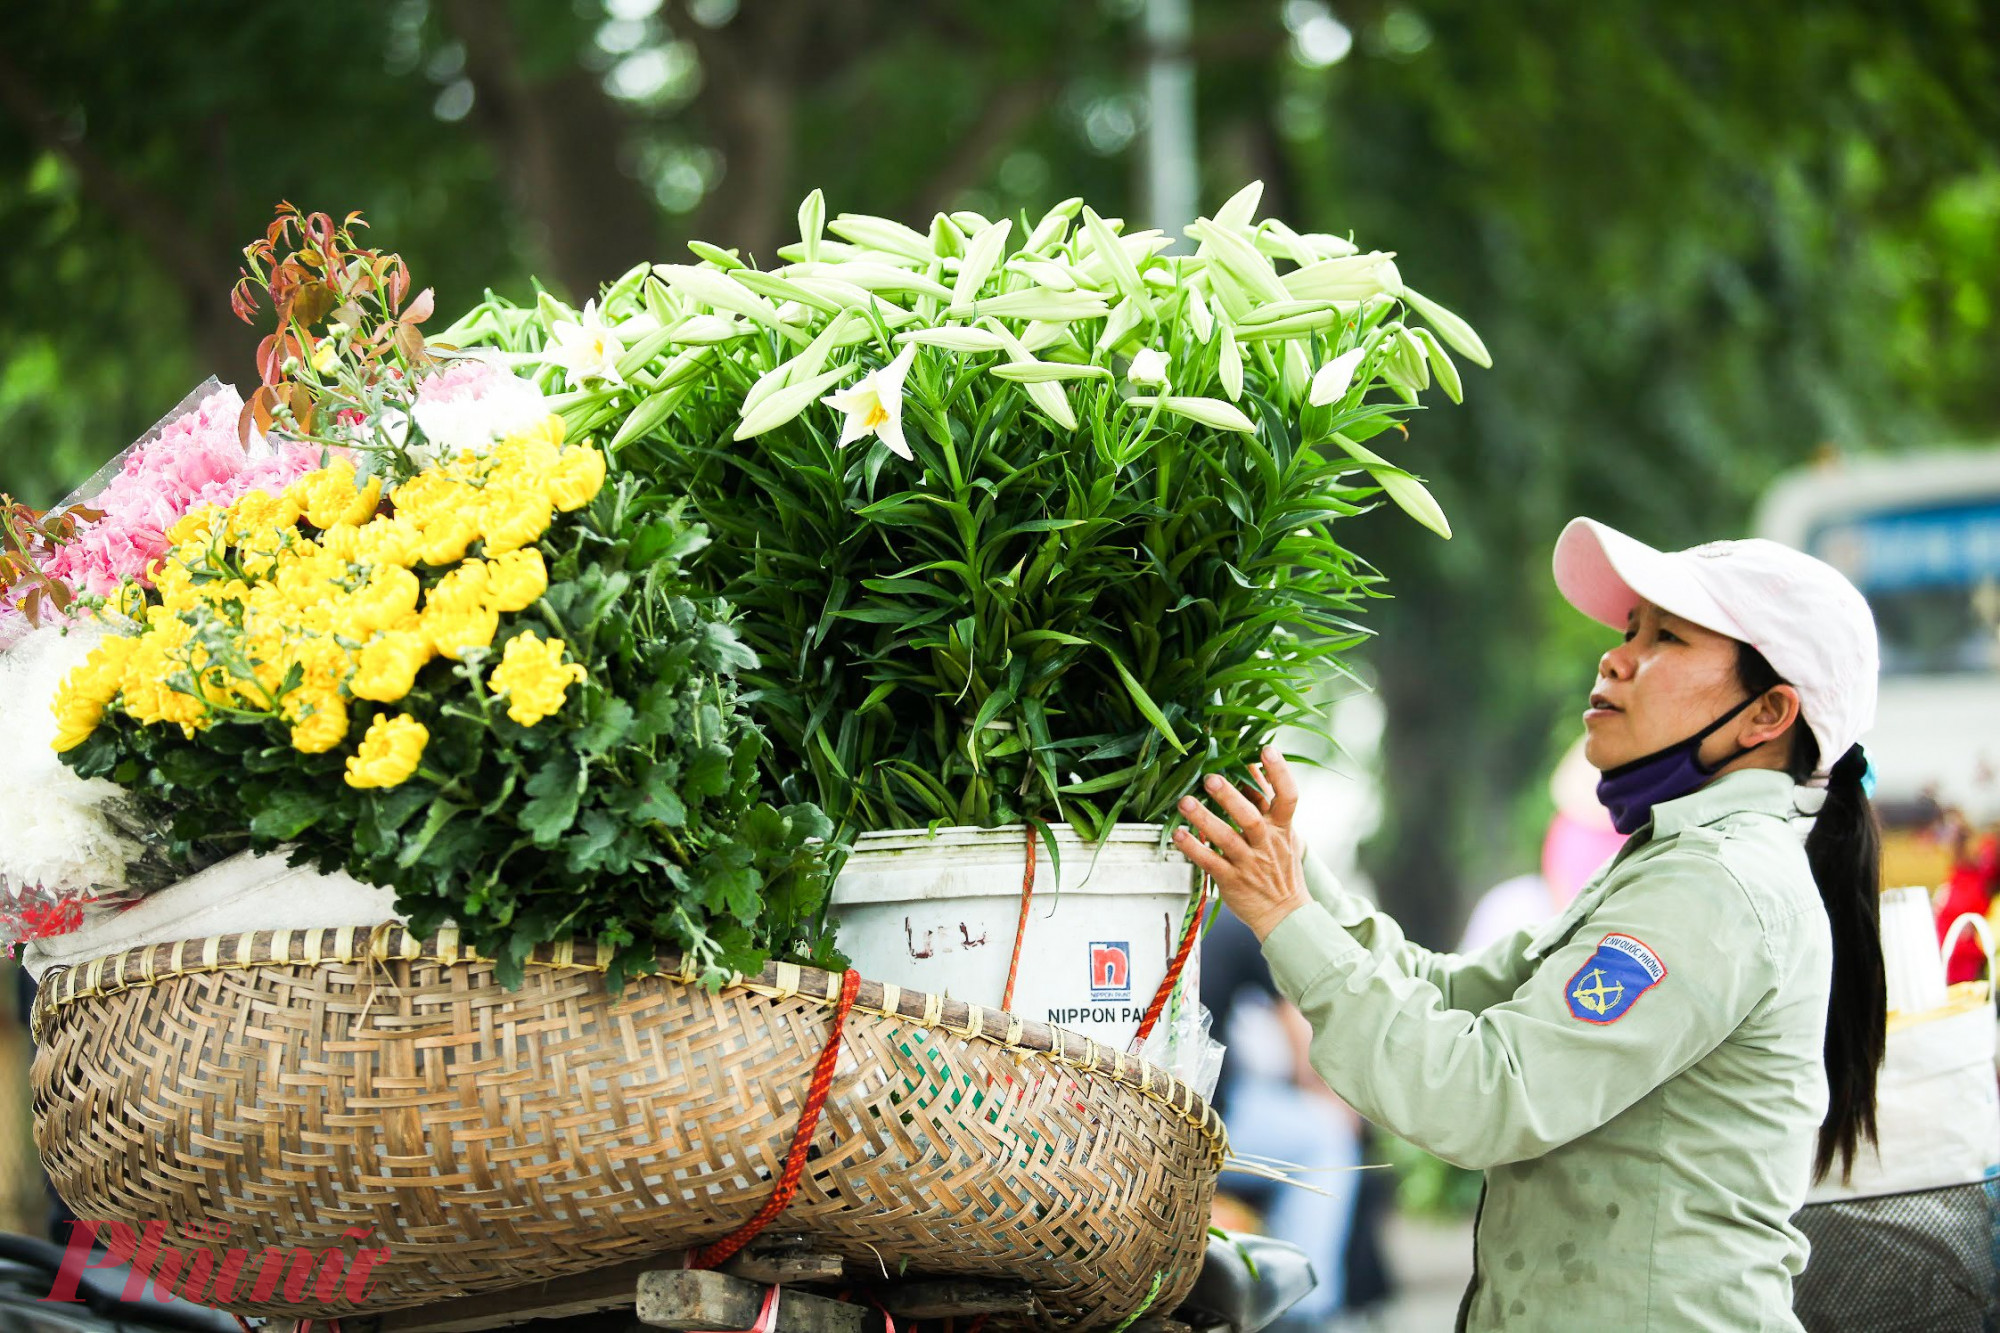 Hoa loa kèn được bày bán nhiều dọc đường Thanh Niên, Thụy Khuê, Giảng Võ, Nguyễn Chí Thanh... Dù thời điểm này, giá hoa bán lẻ khá cao, nhưng vẫn thu hút khá đông người mua hàng.